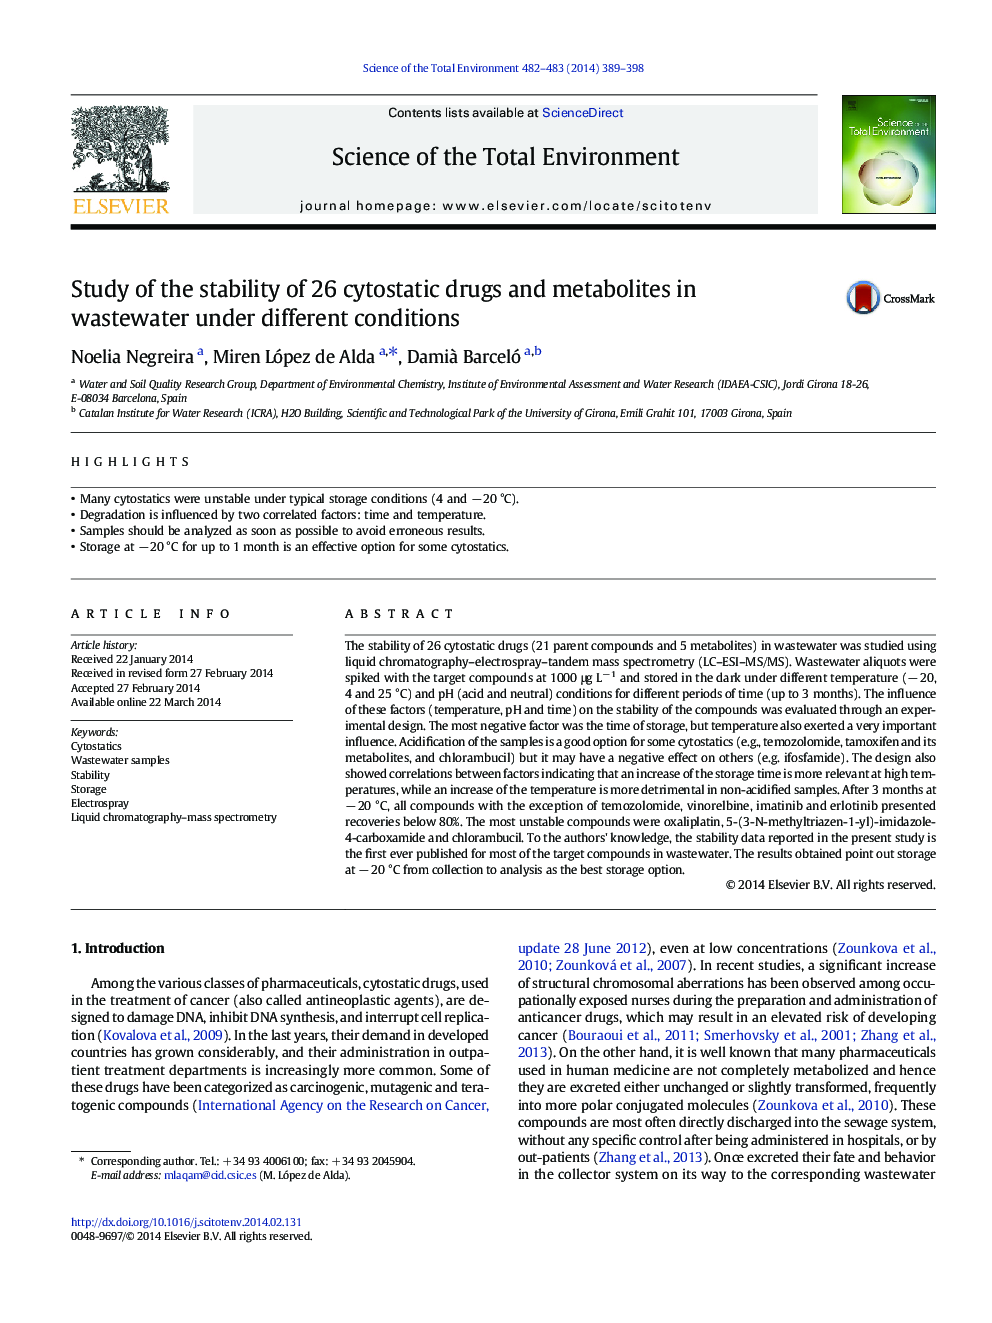 بررسی پایداری 26 دارو و متابولیت های سیتواستاتیک در فاضلاب تحت شرایط مختلف 